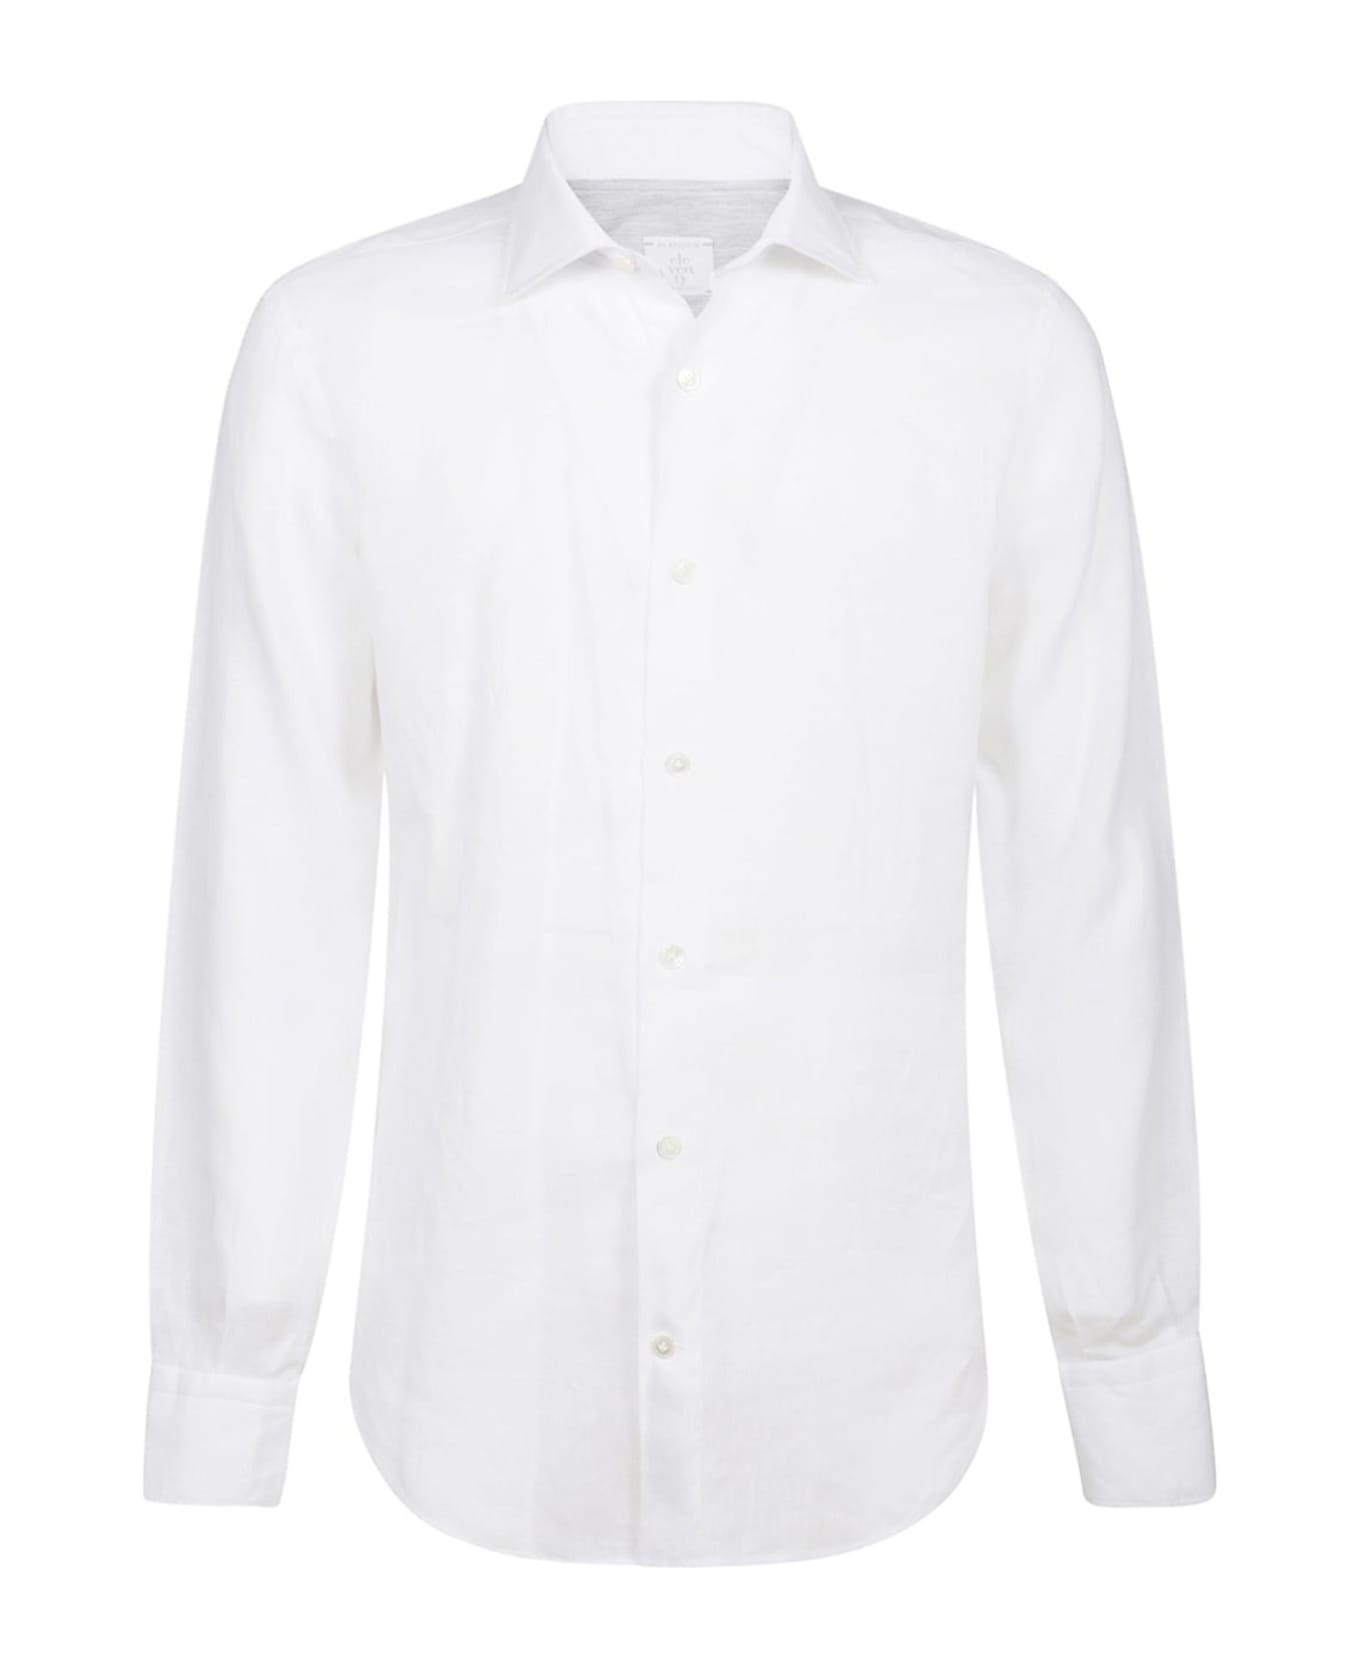 Eleventy White Linen Shirt - BIANCO BEIGE シャツ